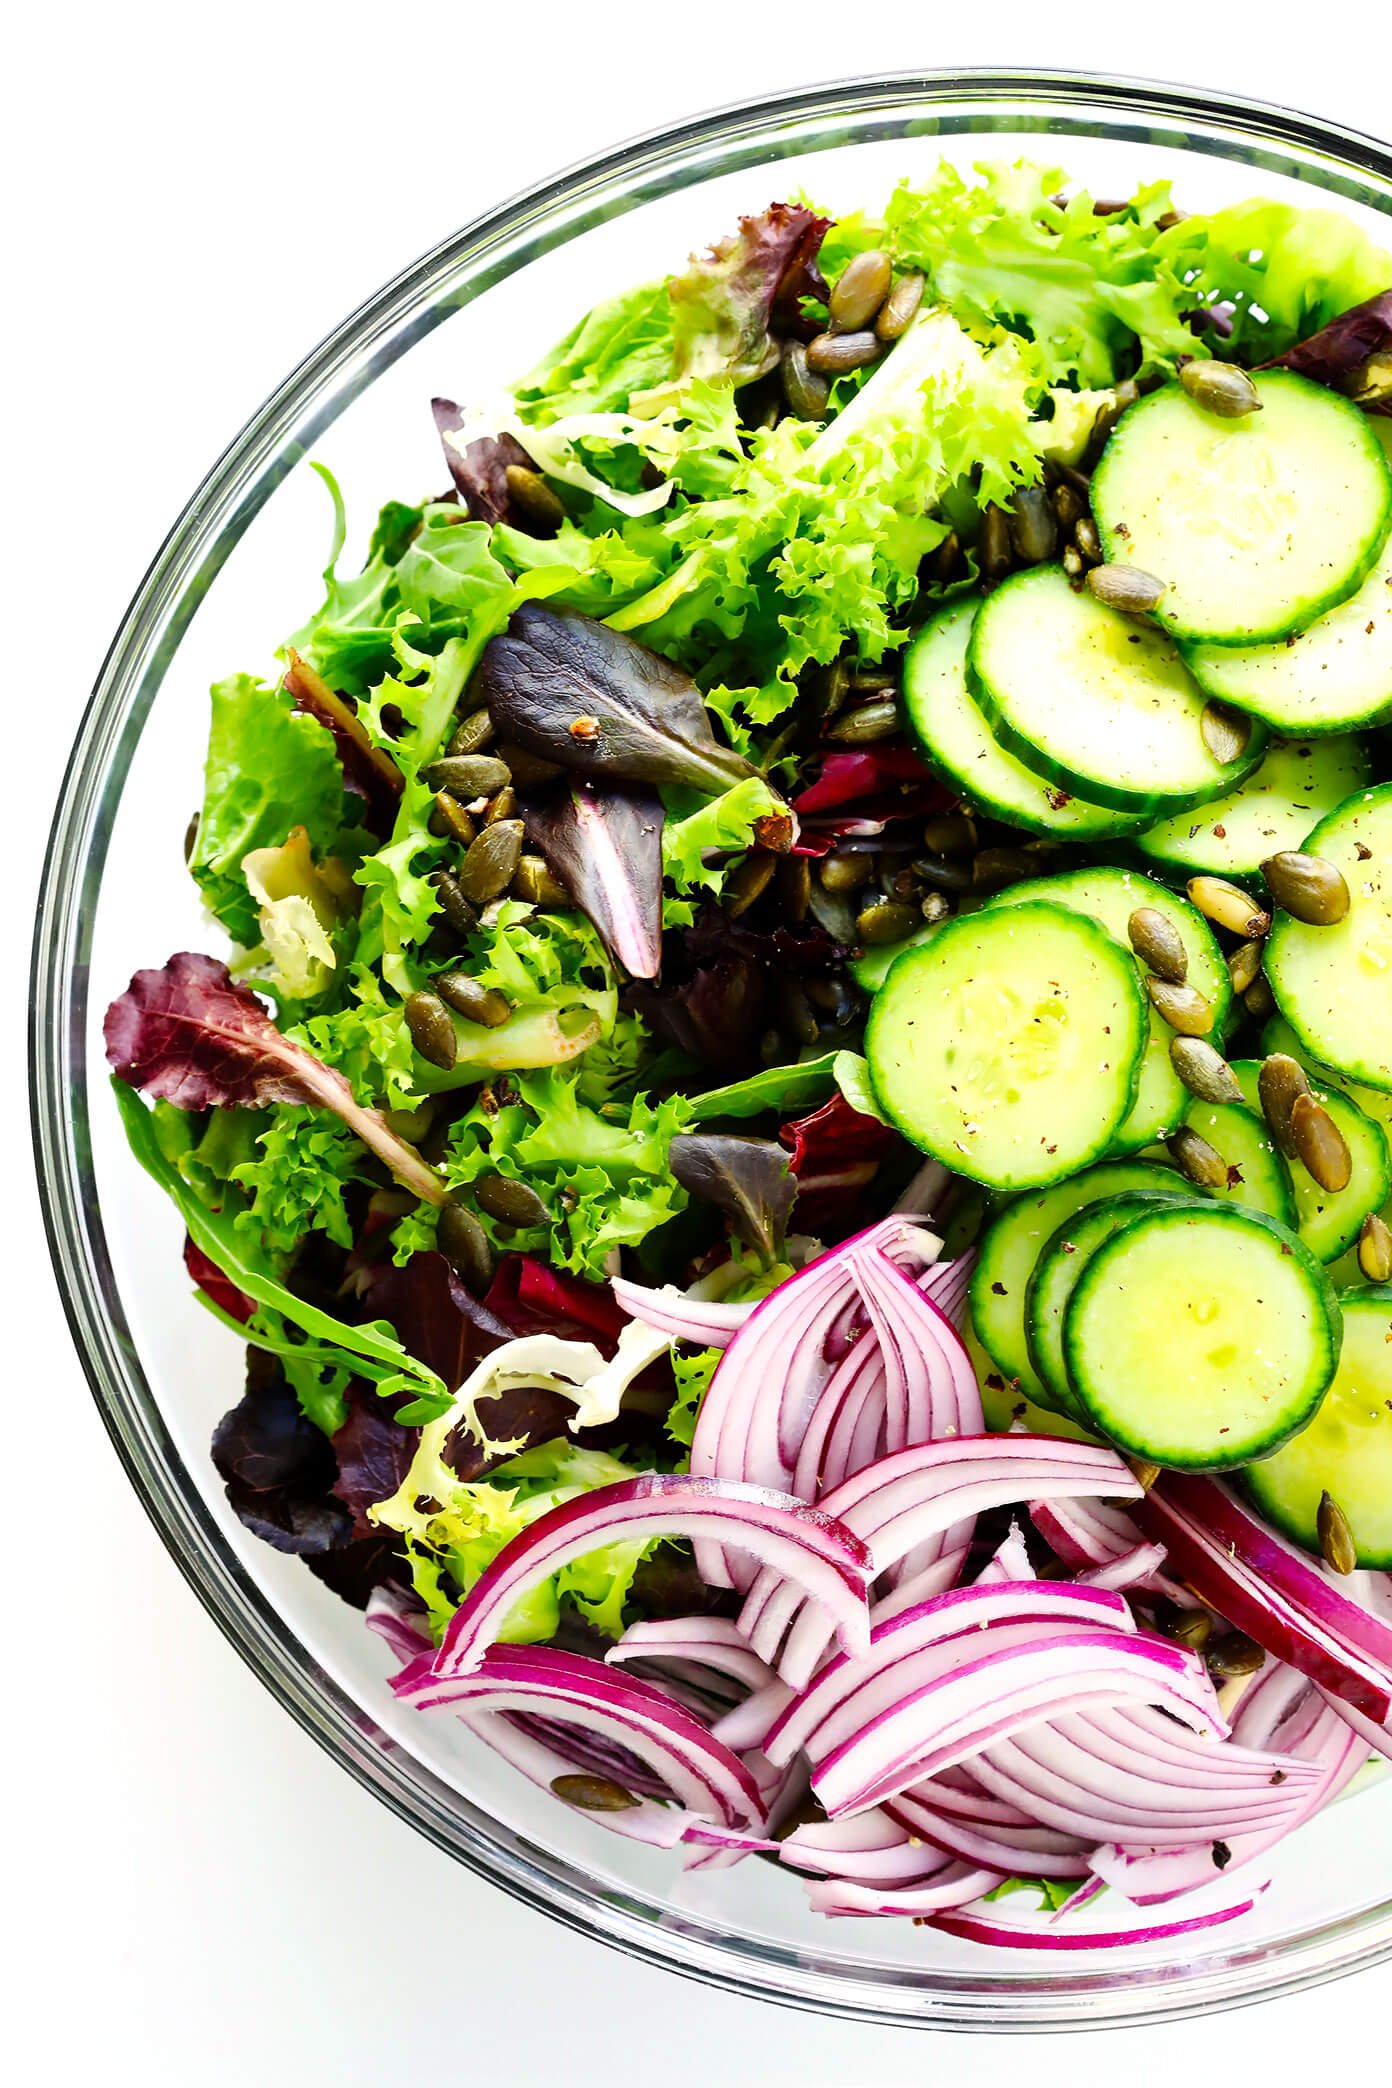 Everyday Salad Ingredients in Salad Bowl